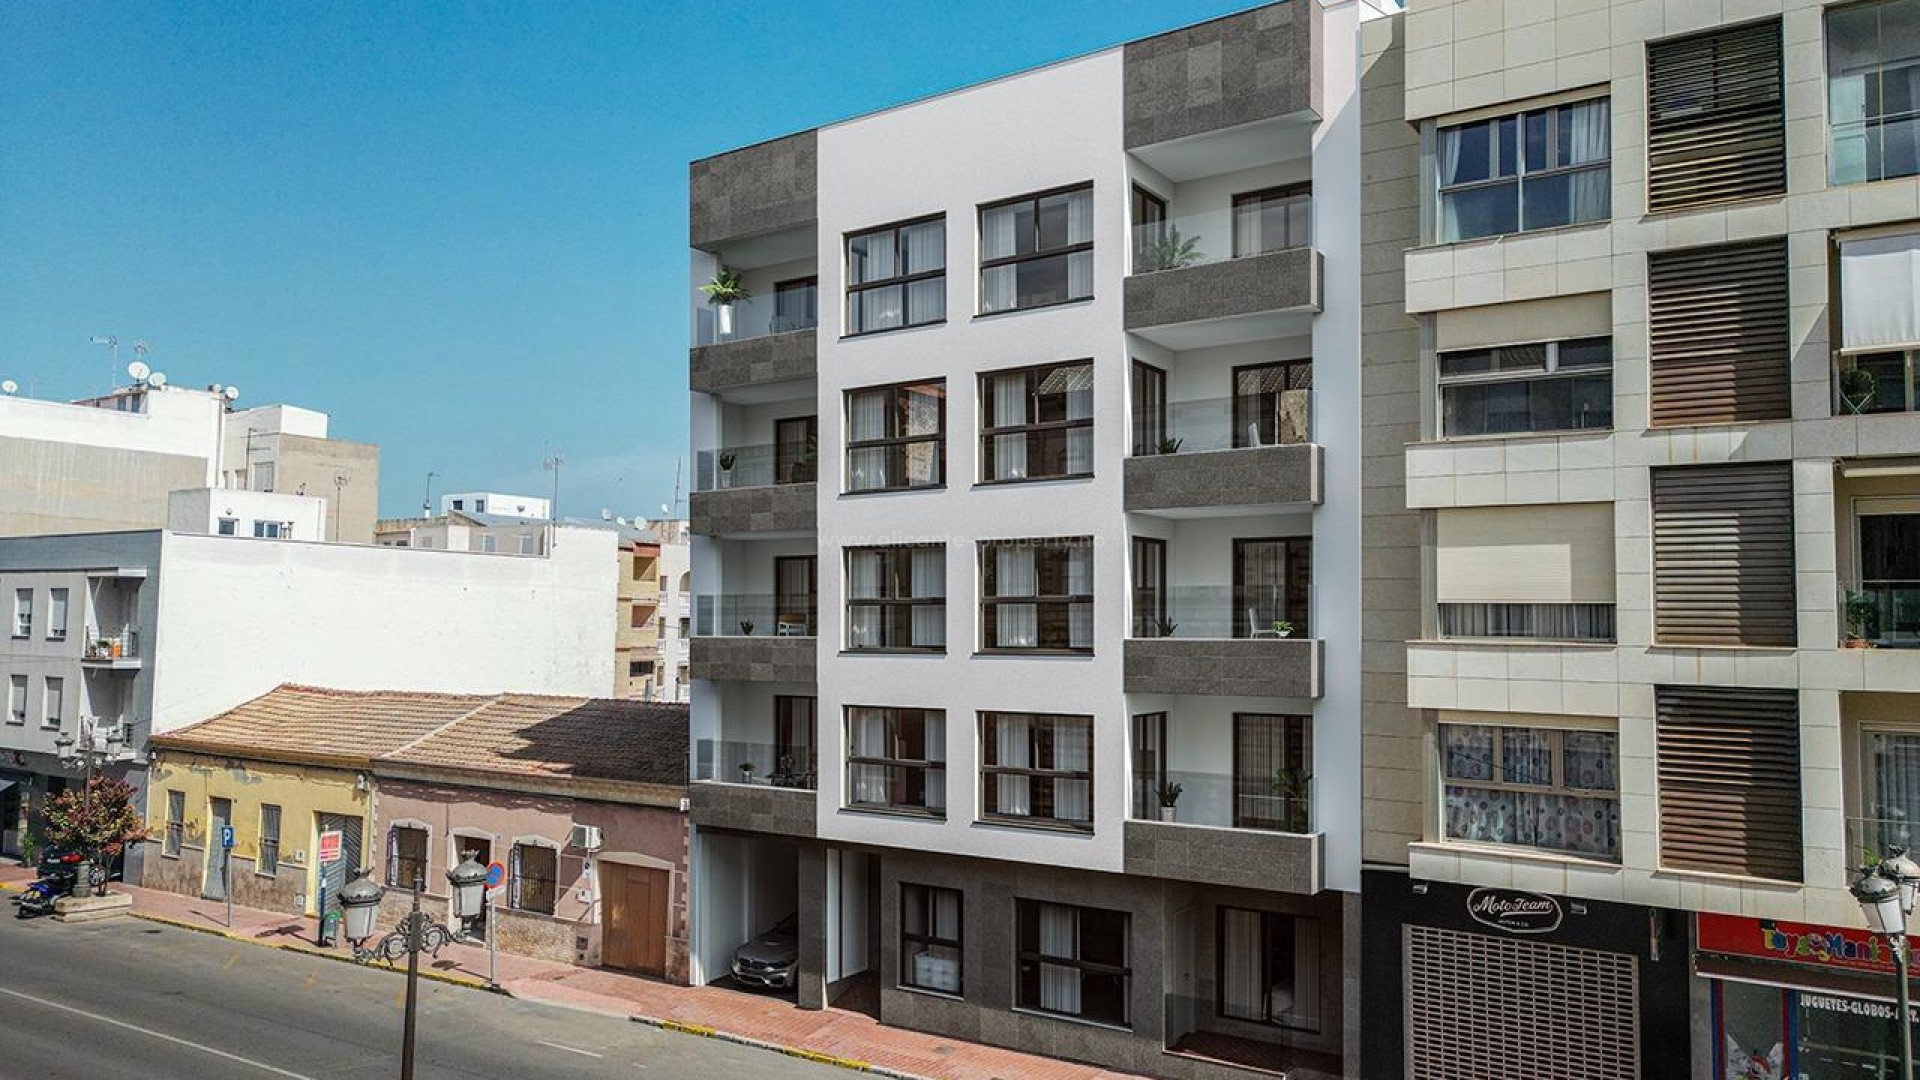 Boligkompleks med leiligheter/toppleilligheter i Guardamar del Segura, 2/3 soverom, alle har åpen kjøkkenløsning med romslig stue, garderober, terrasse